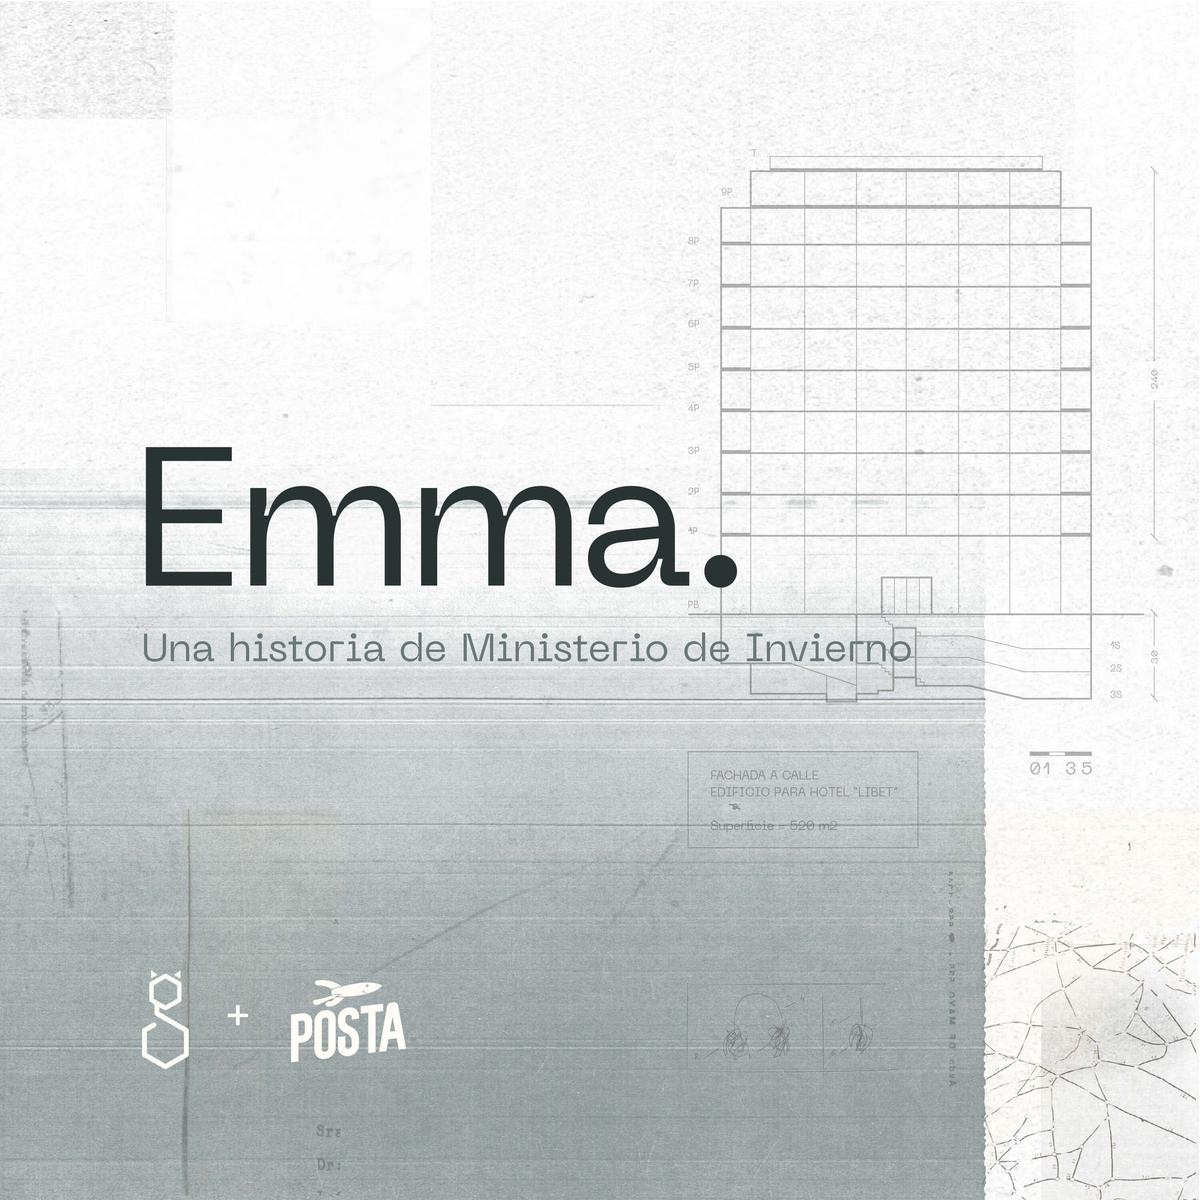 Emma: Una historia de Ministerio de Invierno